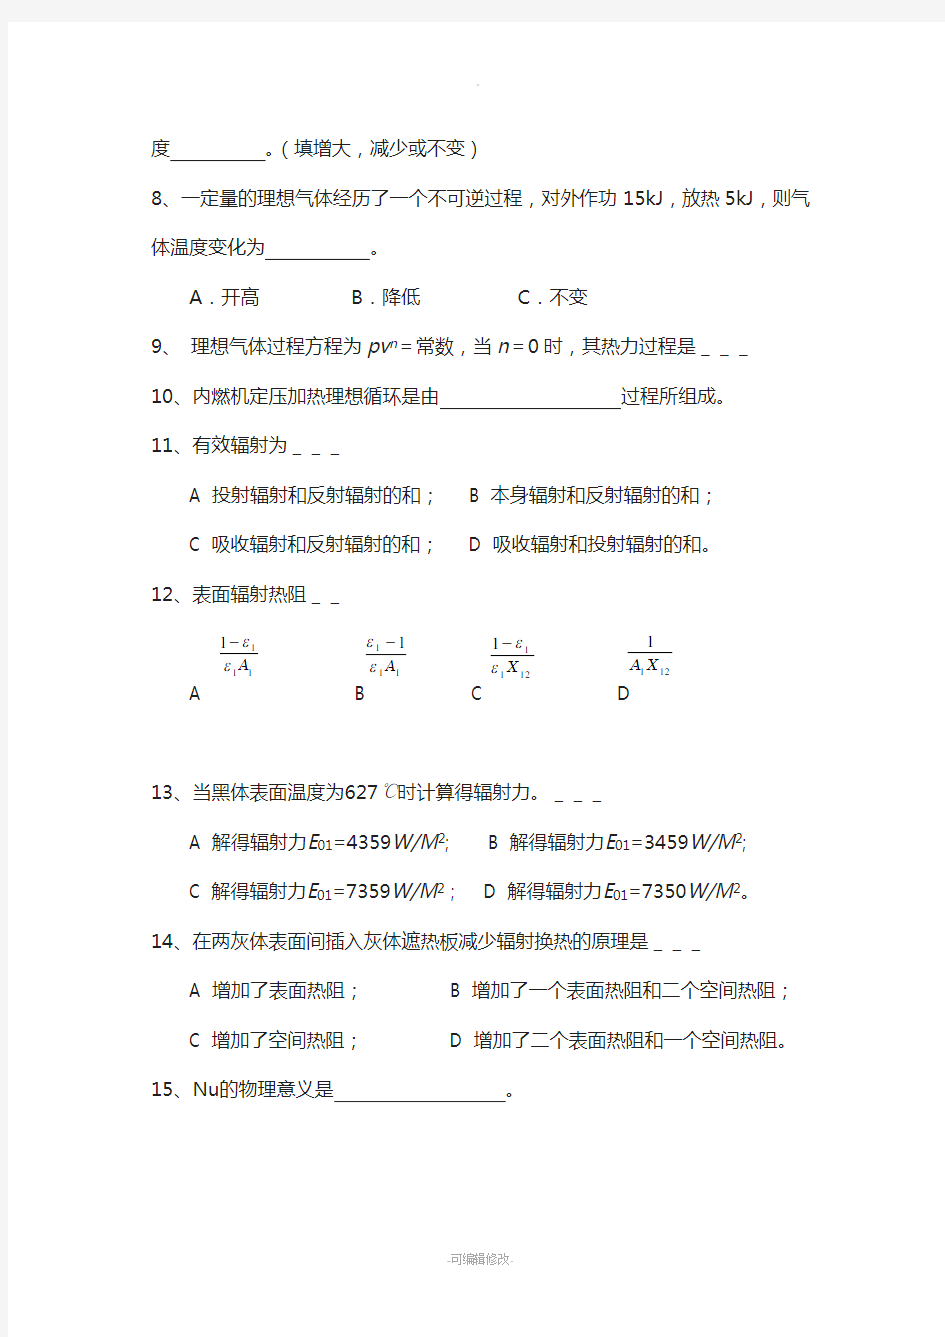 武汉理工大学-工程热力学和传热学往年试卷-含答案